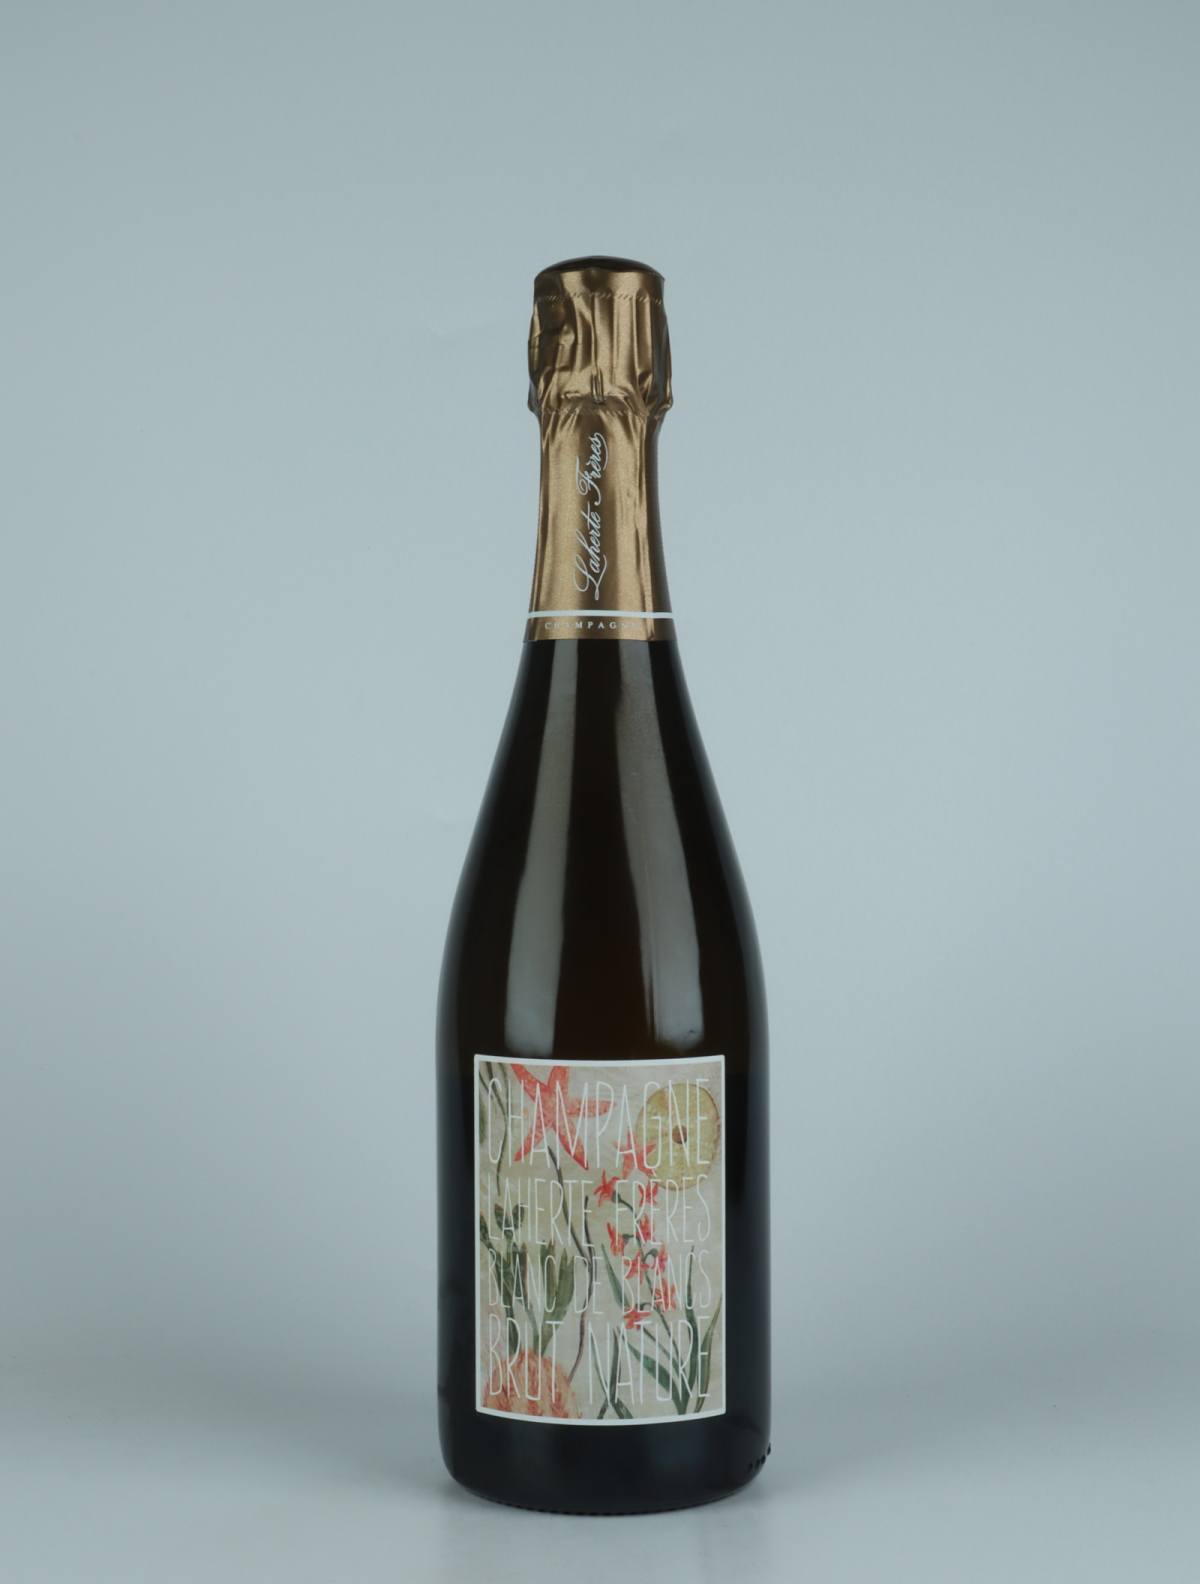 En flaske N.V. Blanc de Blancs - Brut Nature Mousserende fra Laherte Frères, Champagne i Frankrig